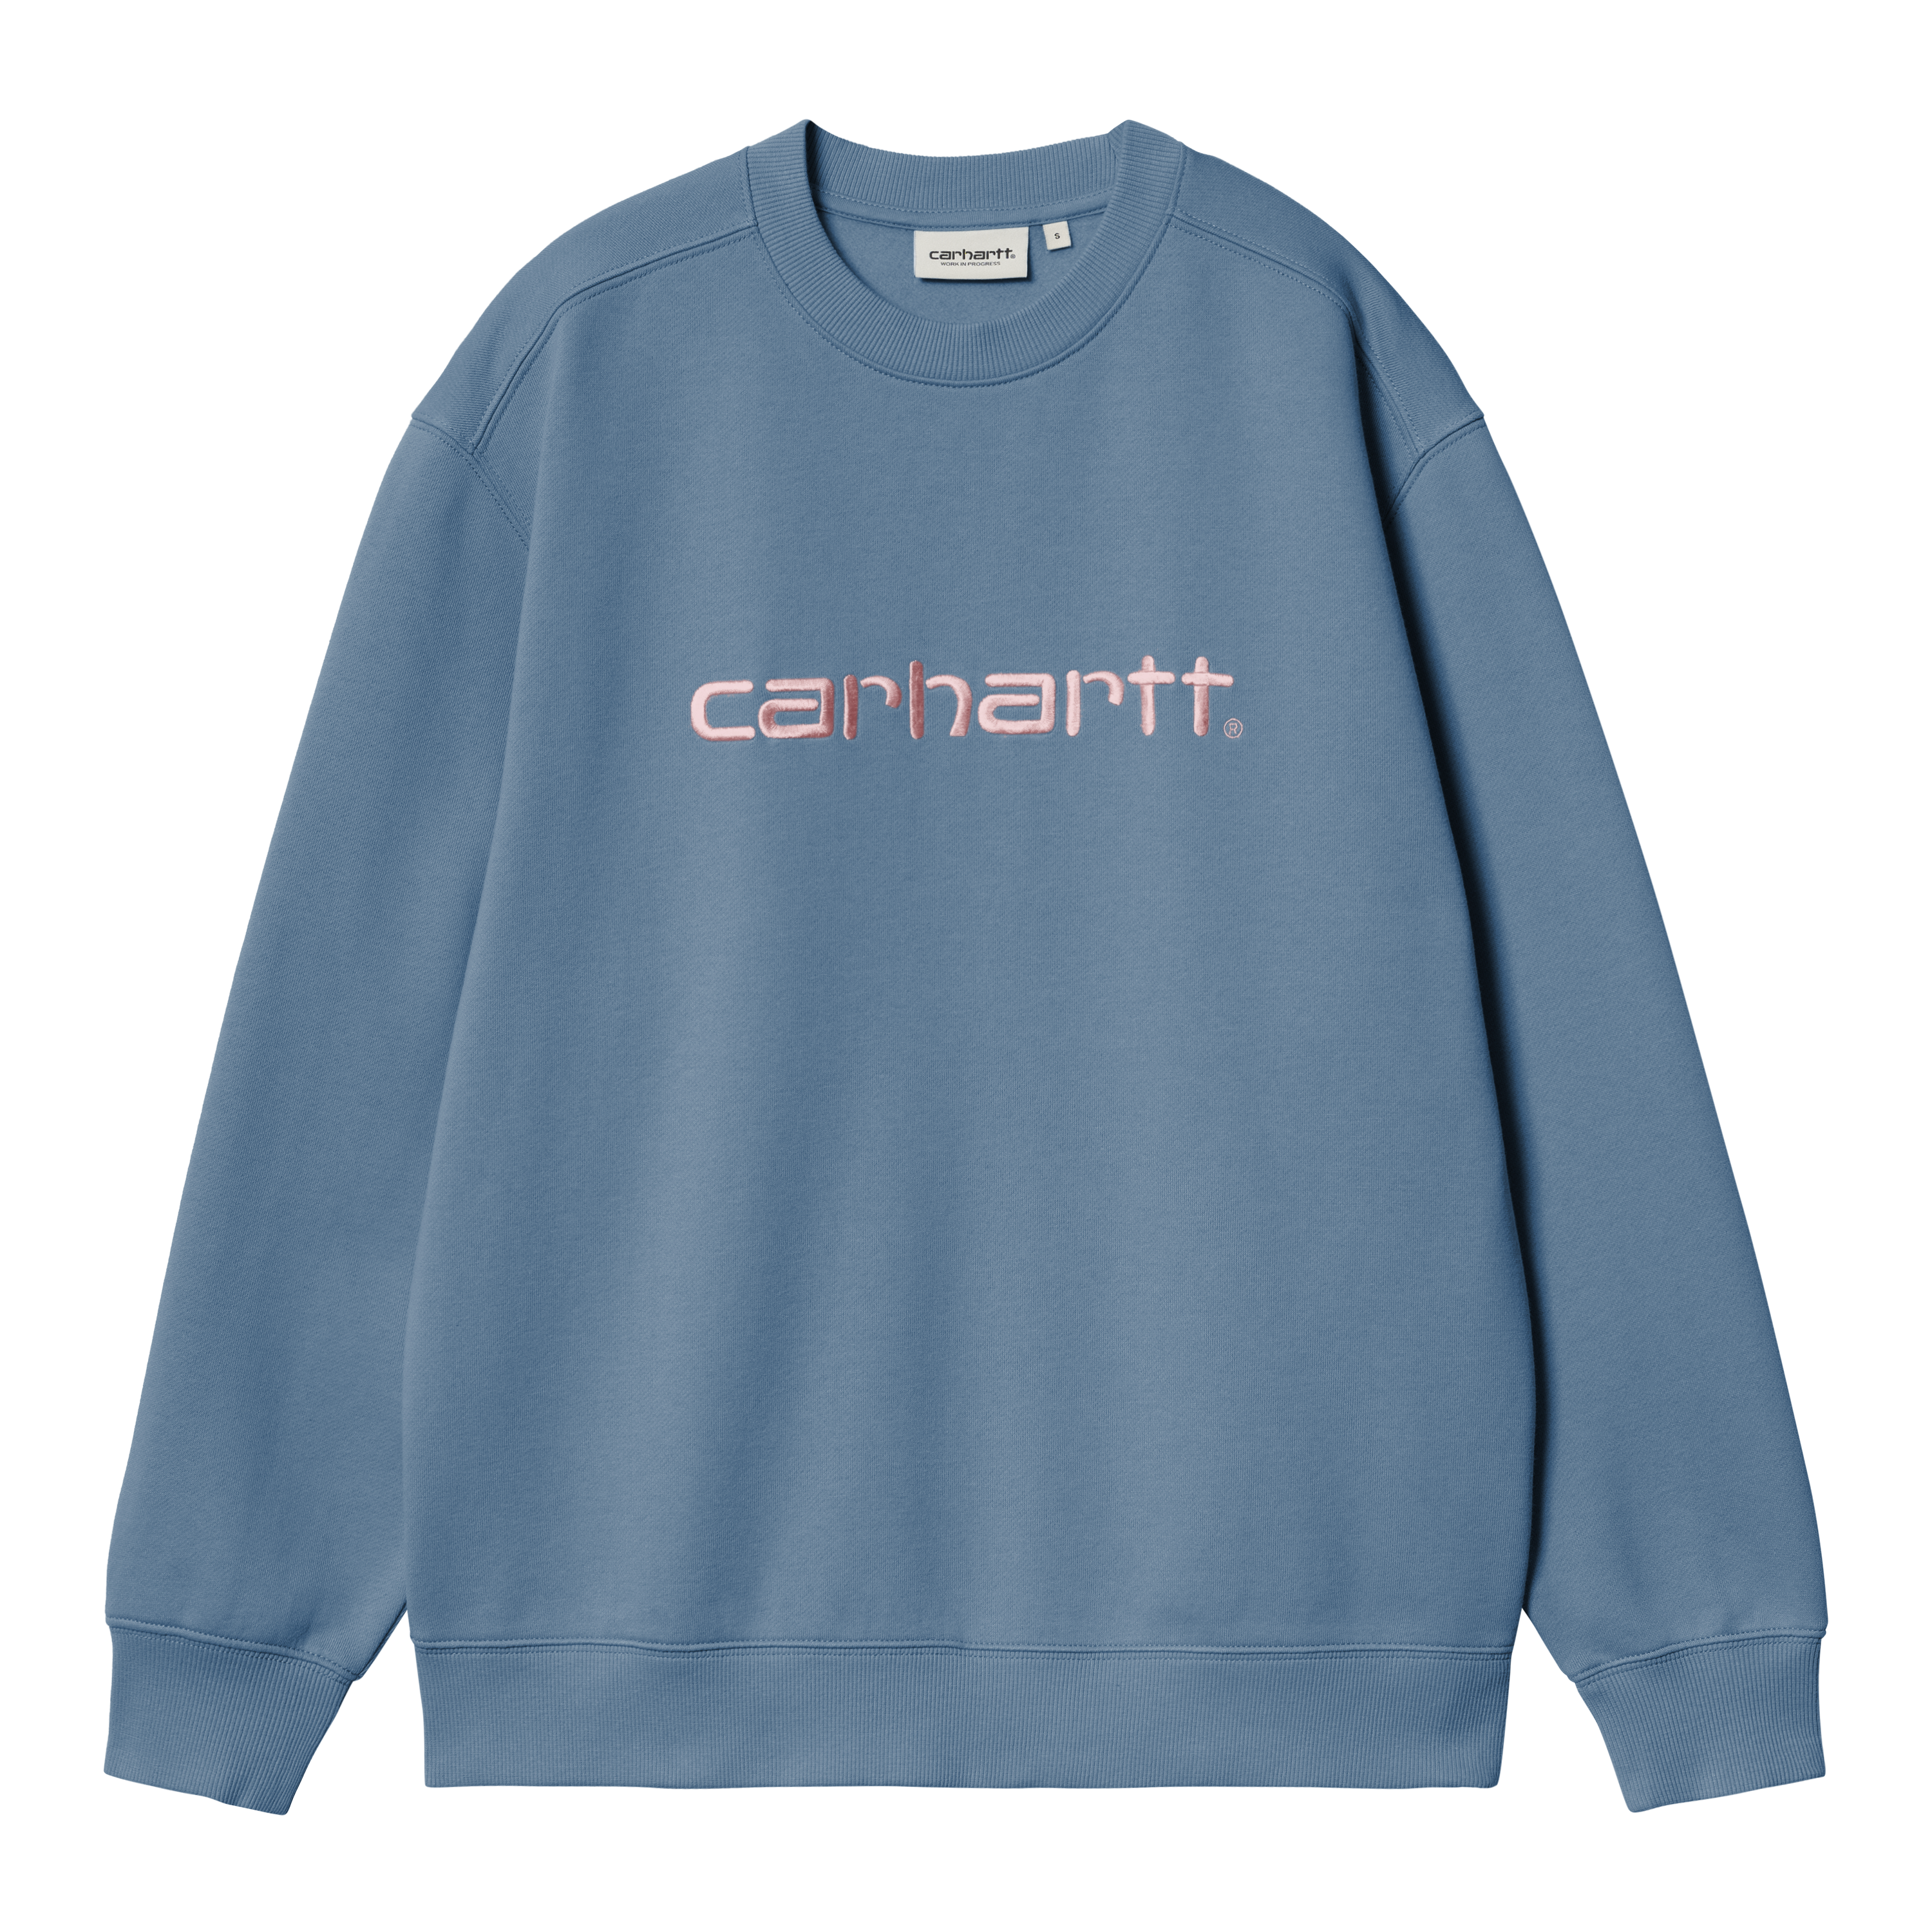 Carhartt WIP Women’s Carhartt Sweatshirt in Blu